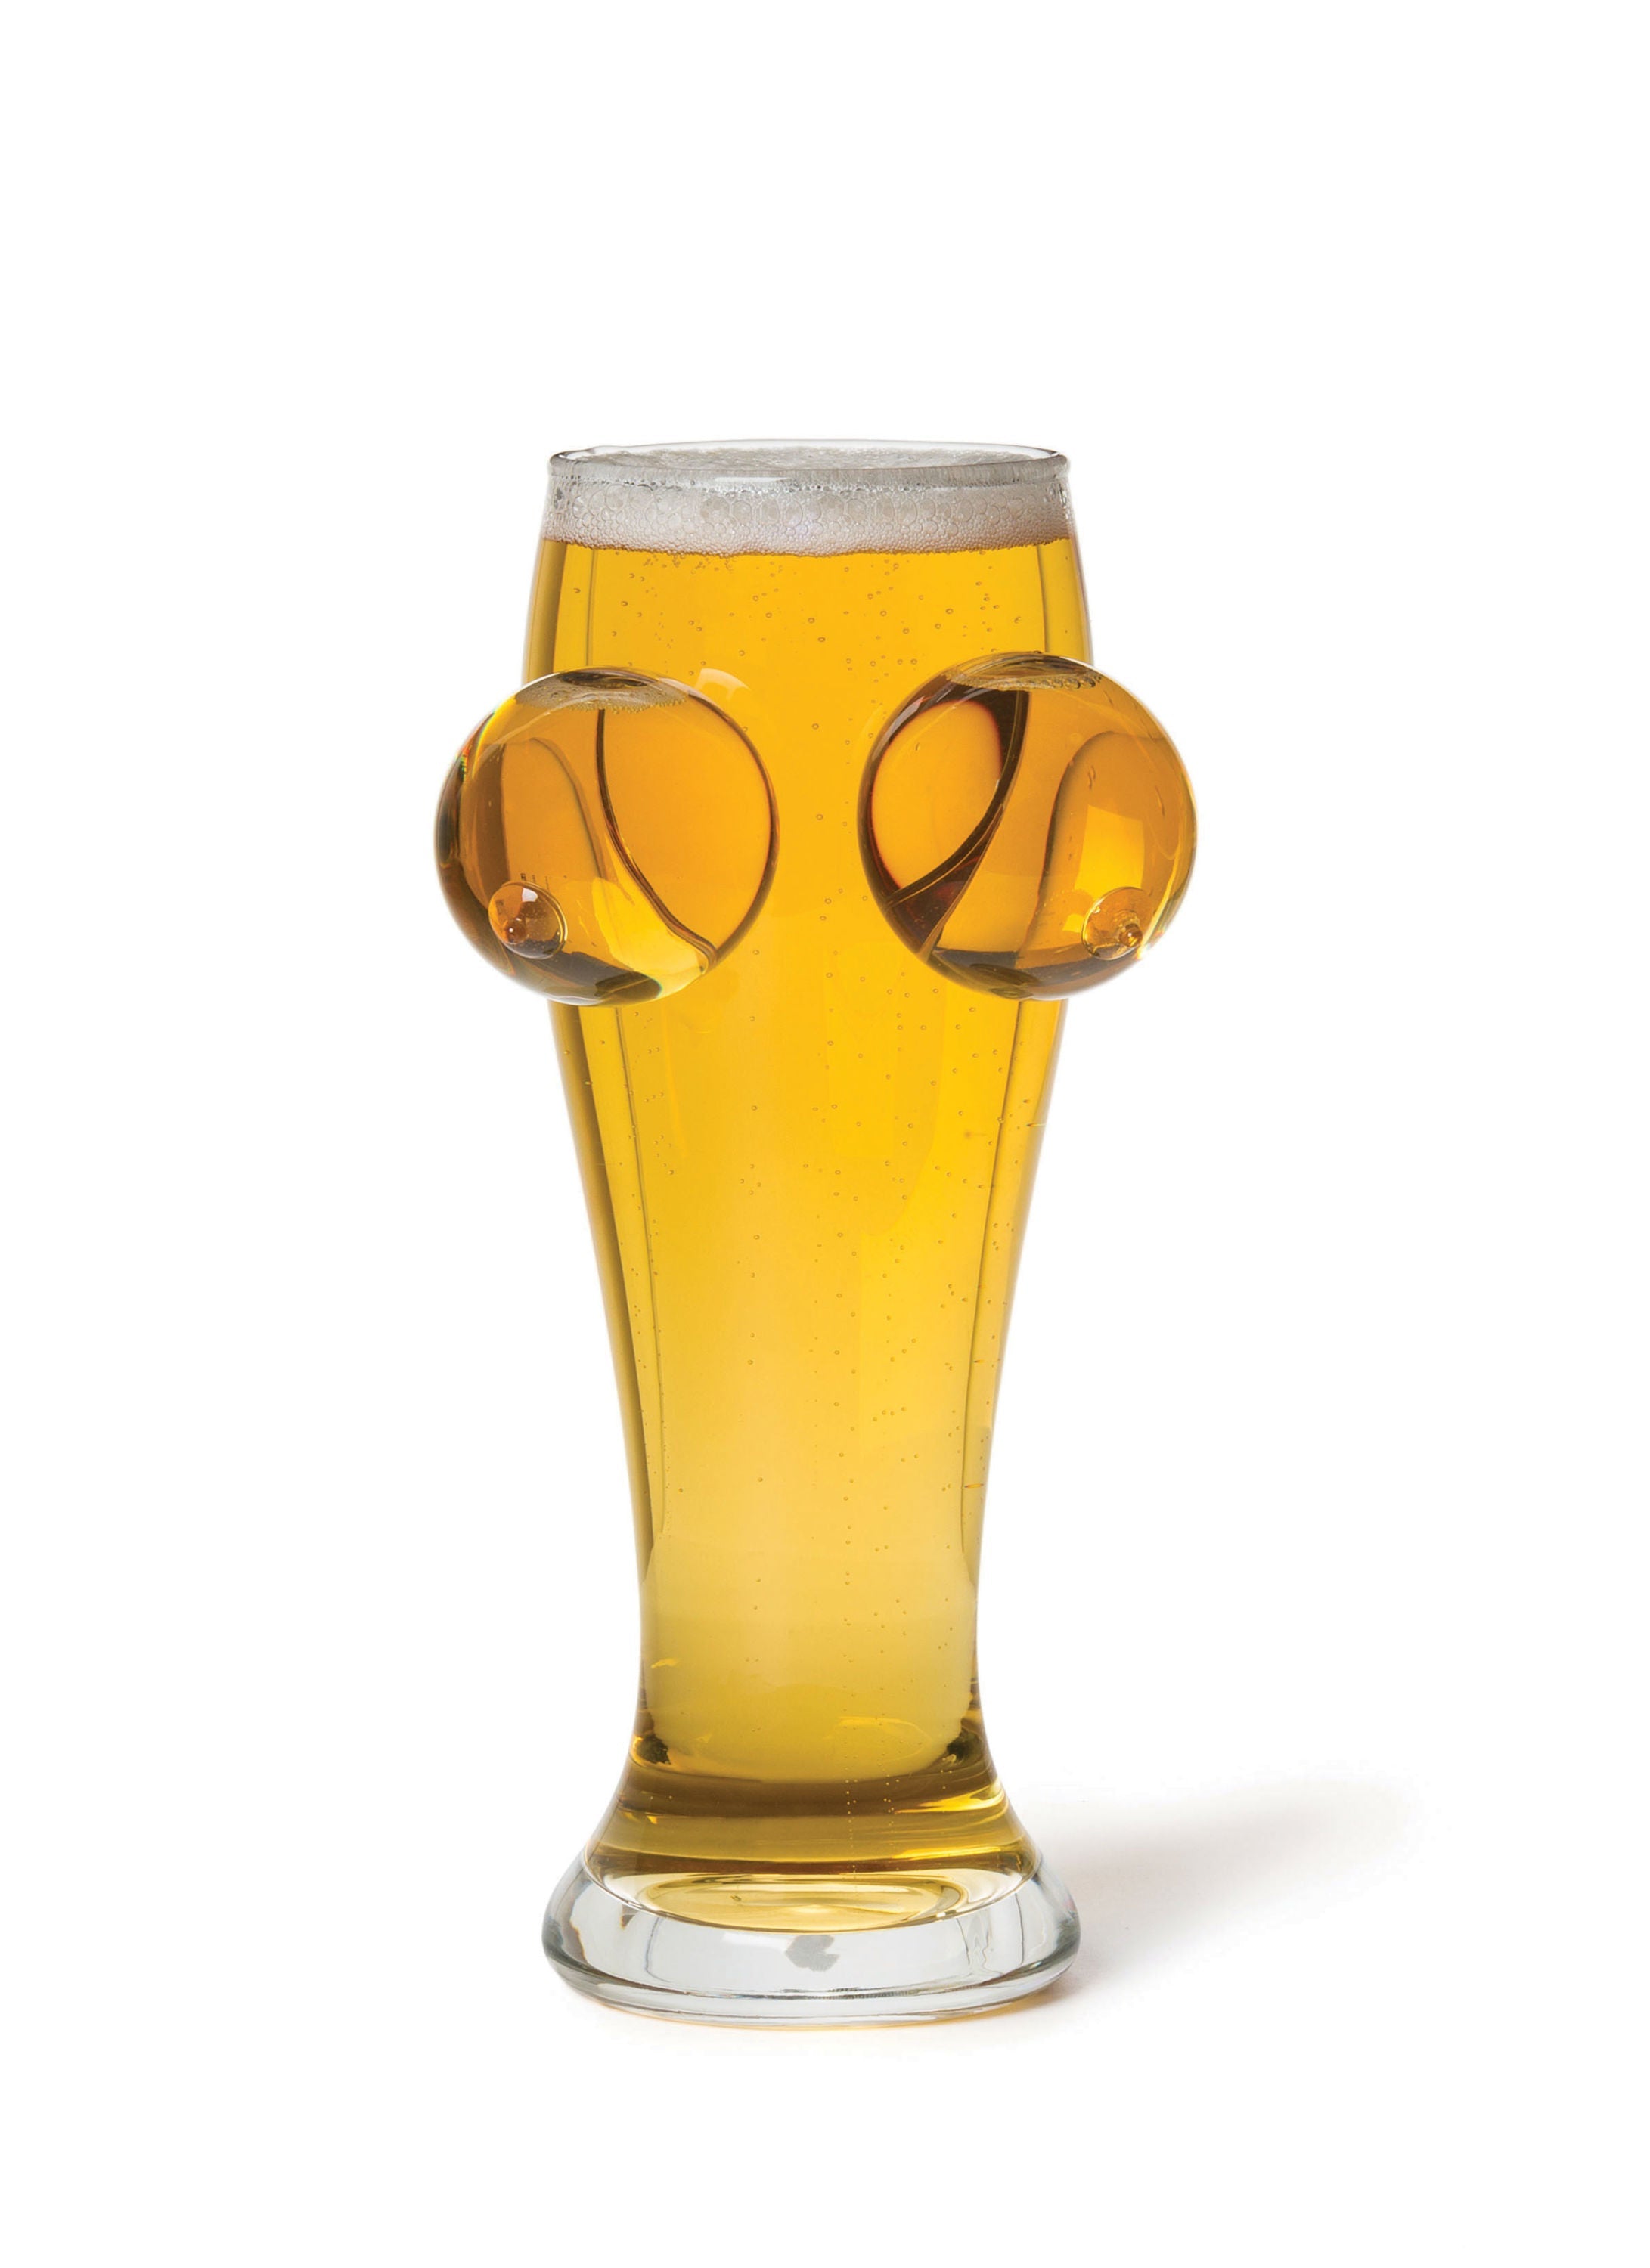 The Boobies N Beer Glass